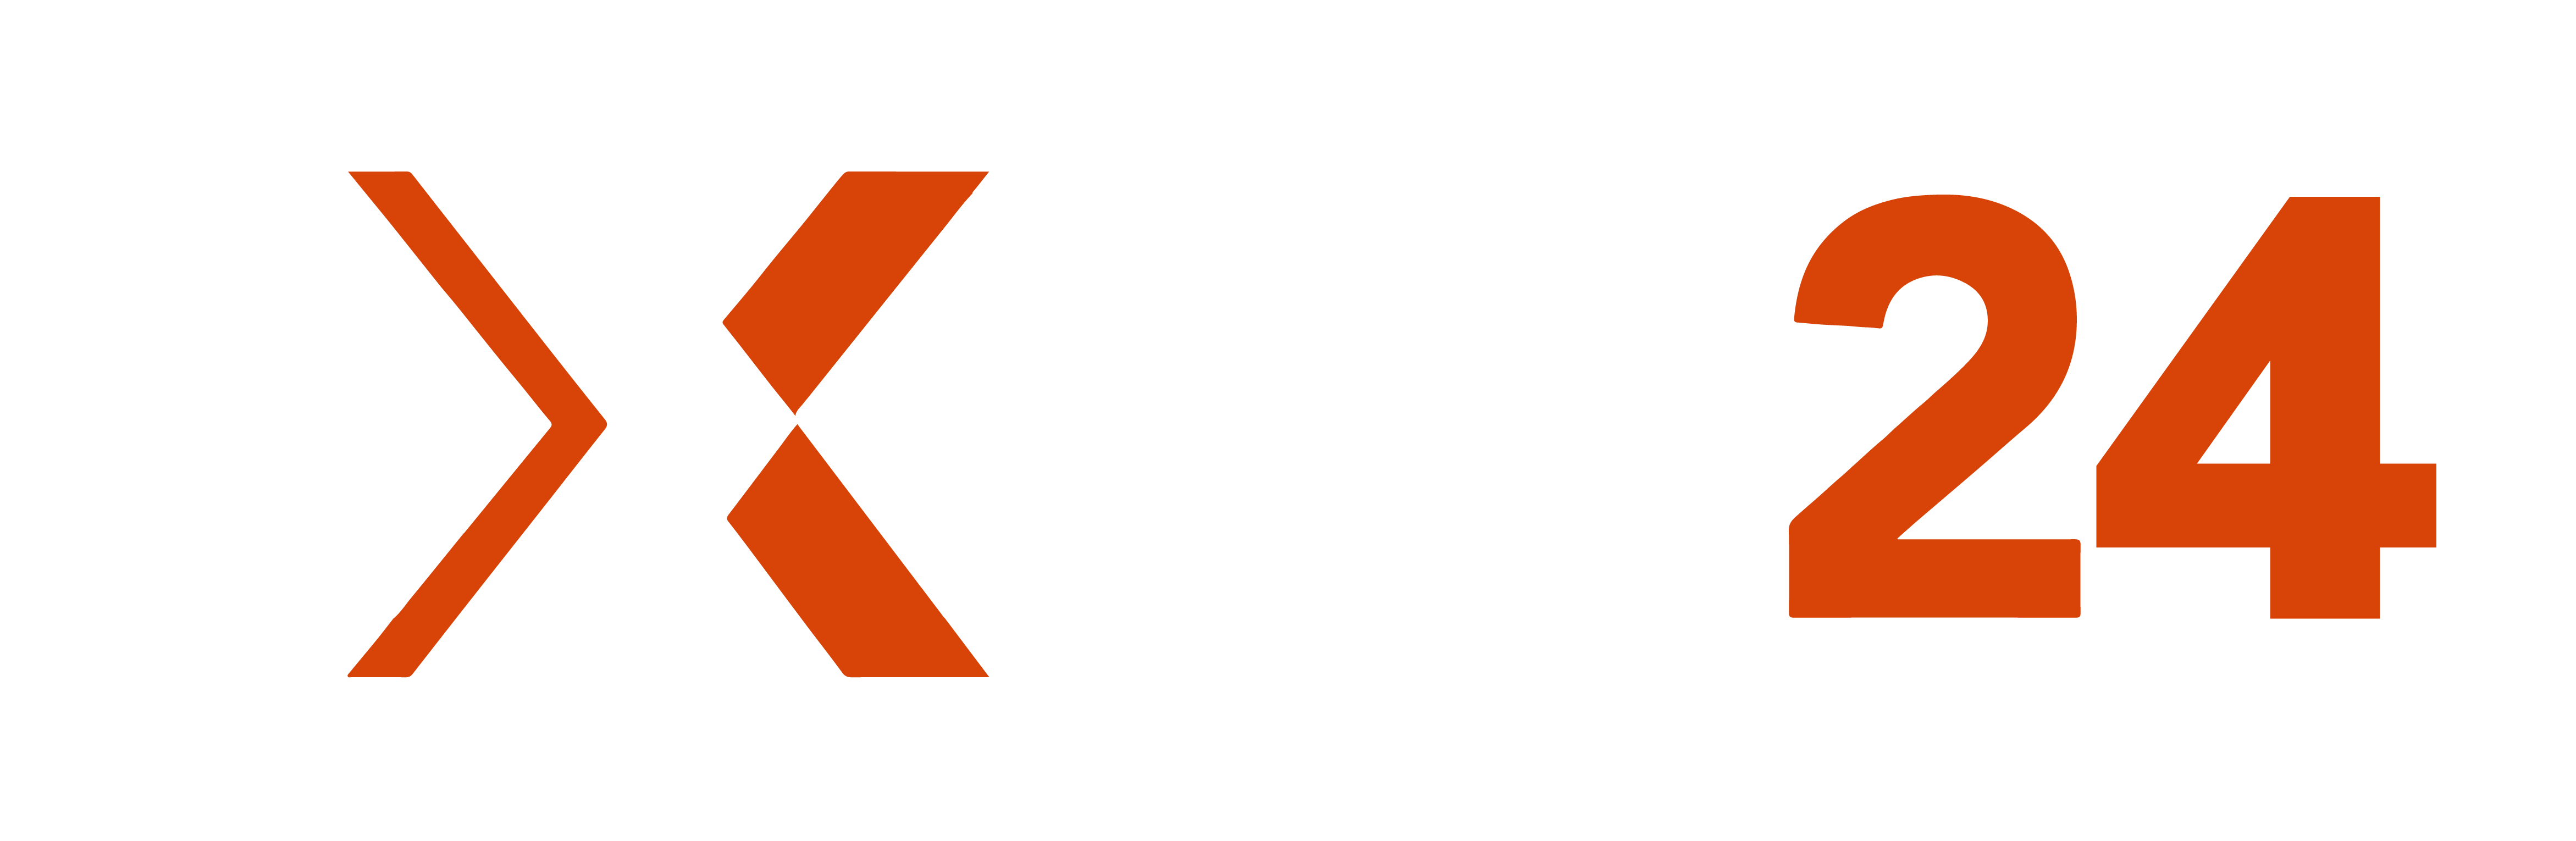 Excel24 logo